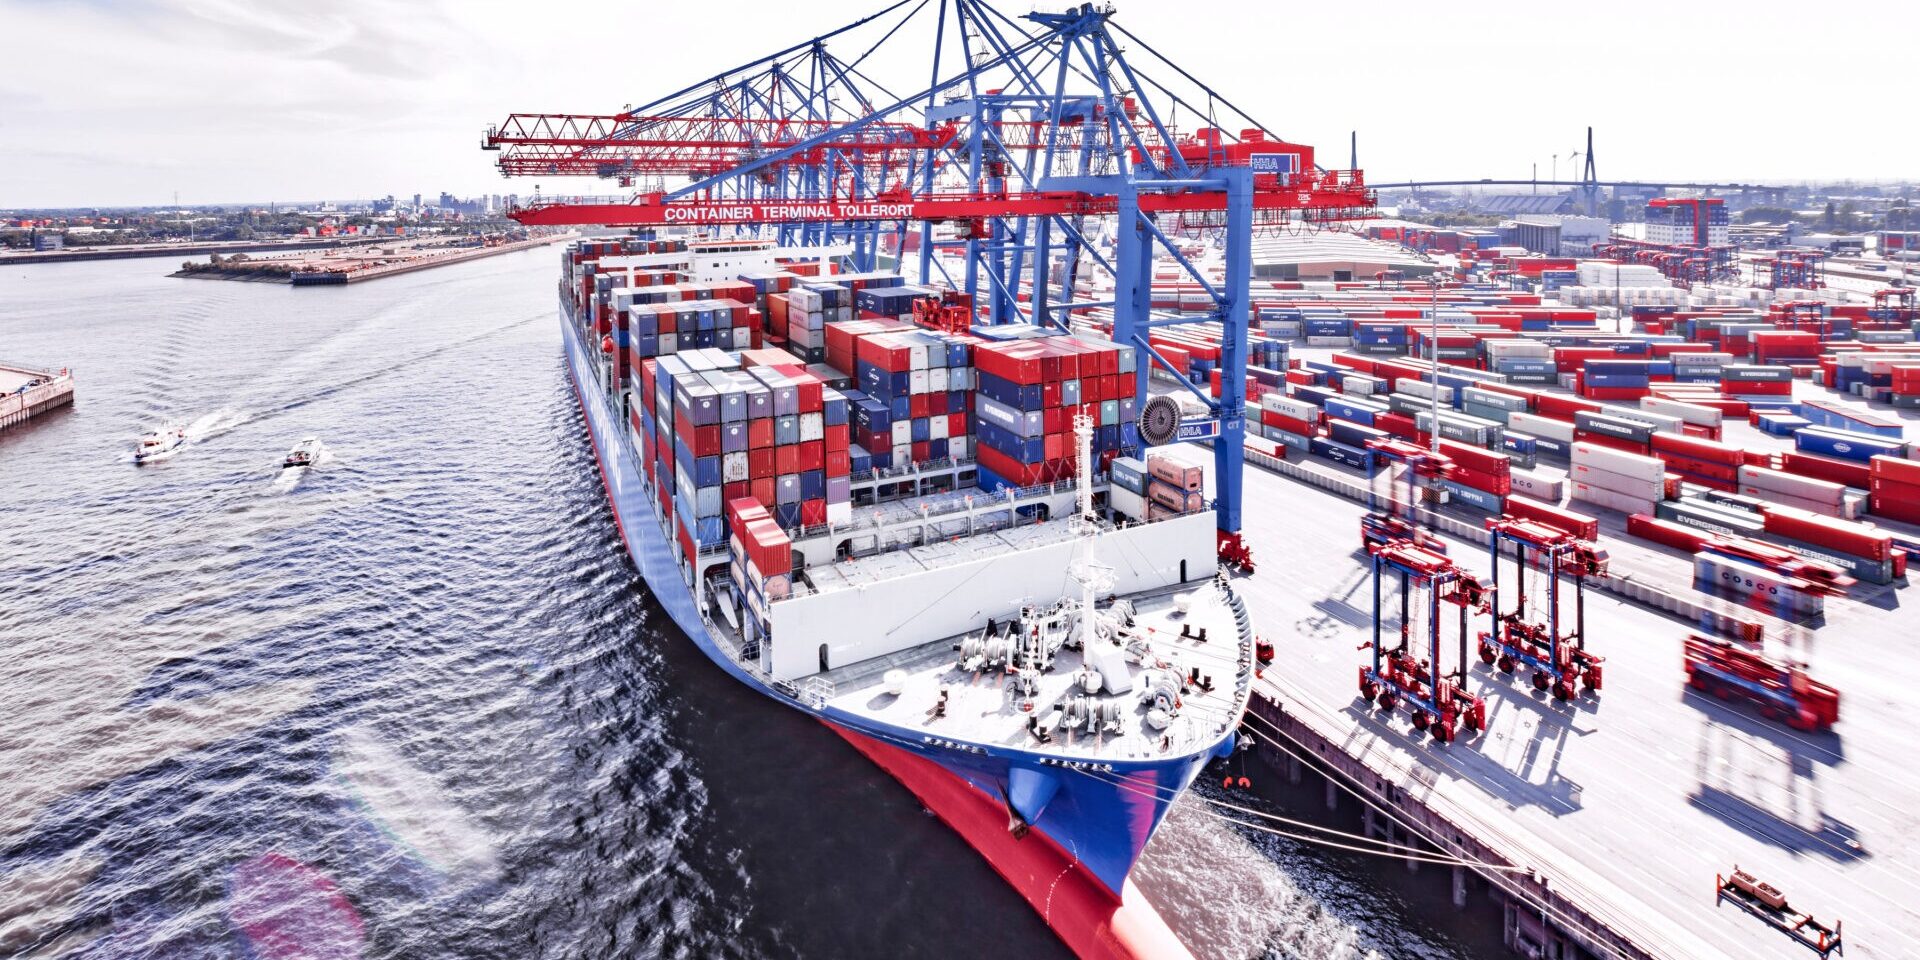 Cosco-Containerschiff am eigenen Terminal Tollerort in Hamburg